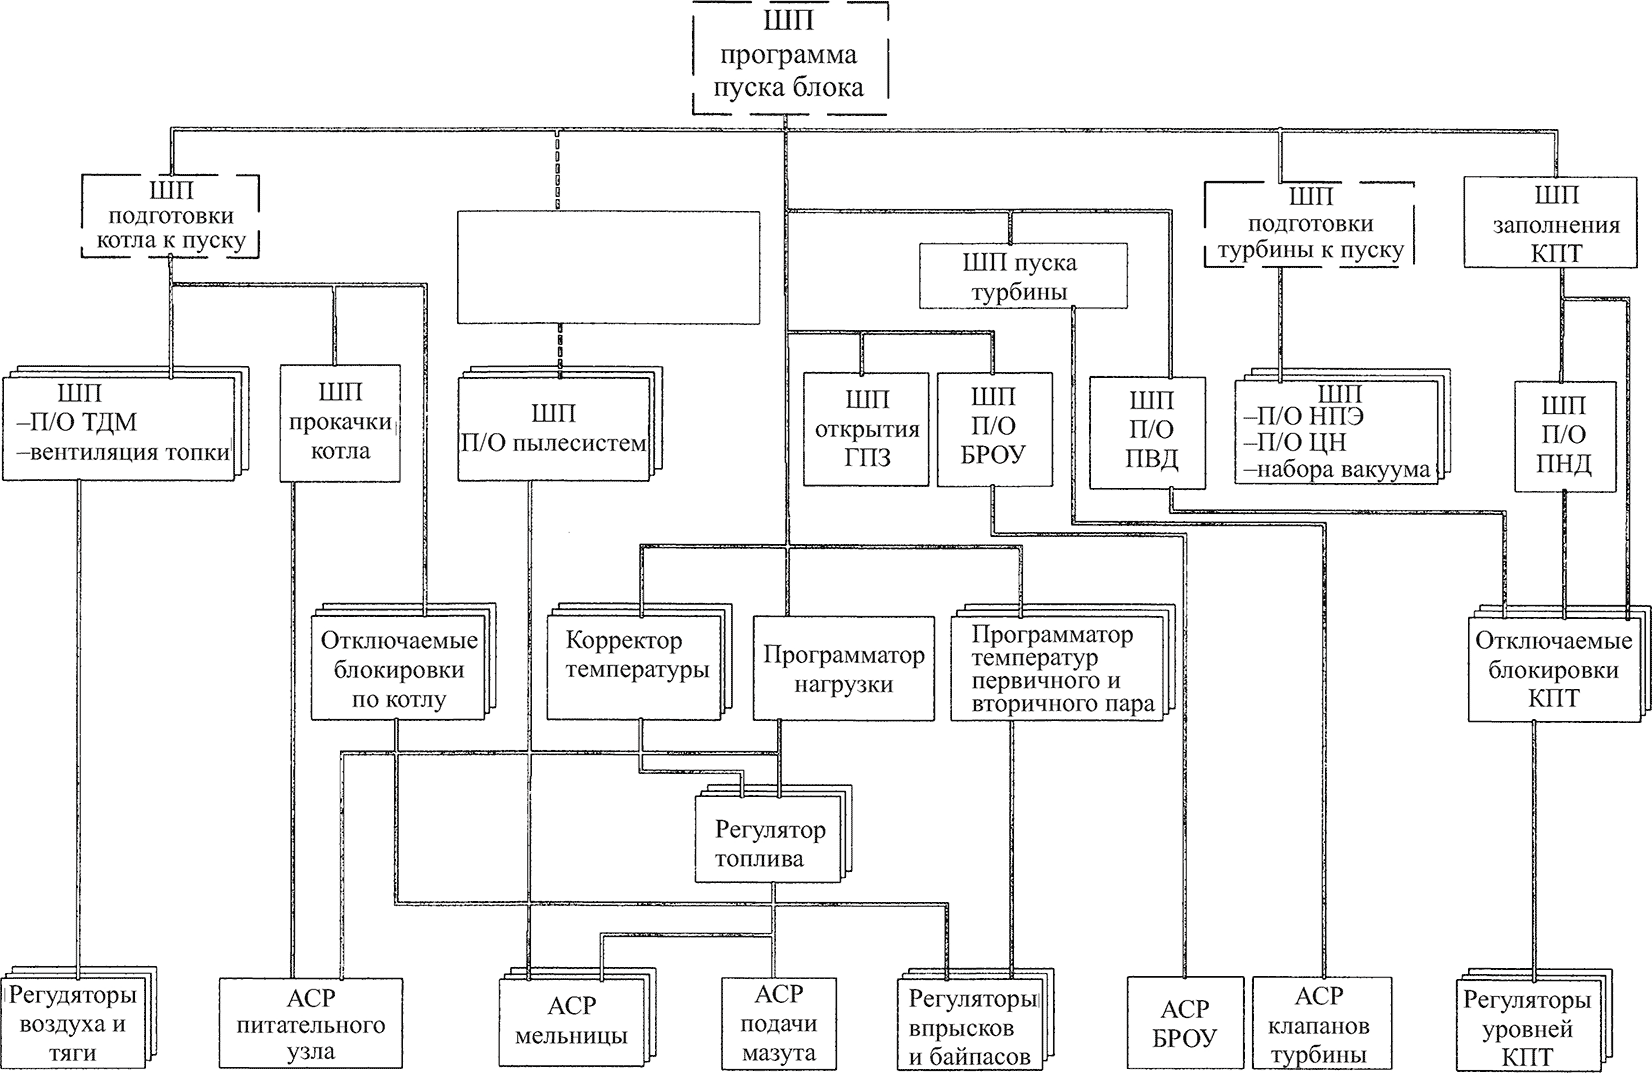 структура управления энергоблоком